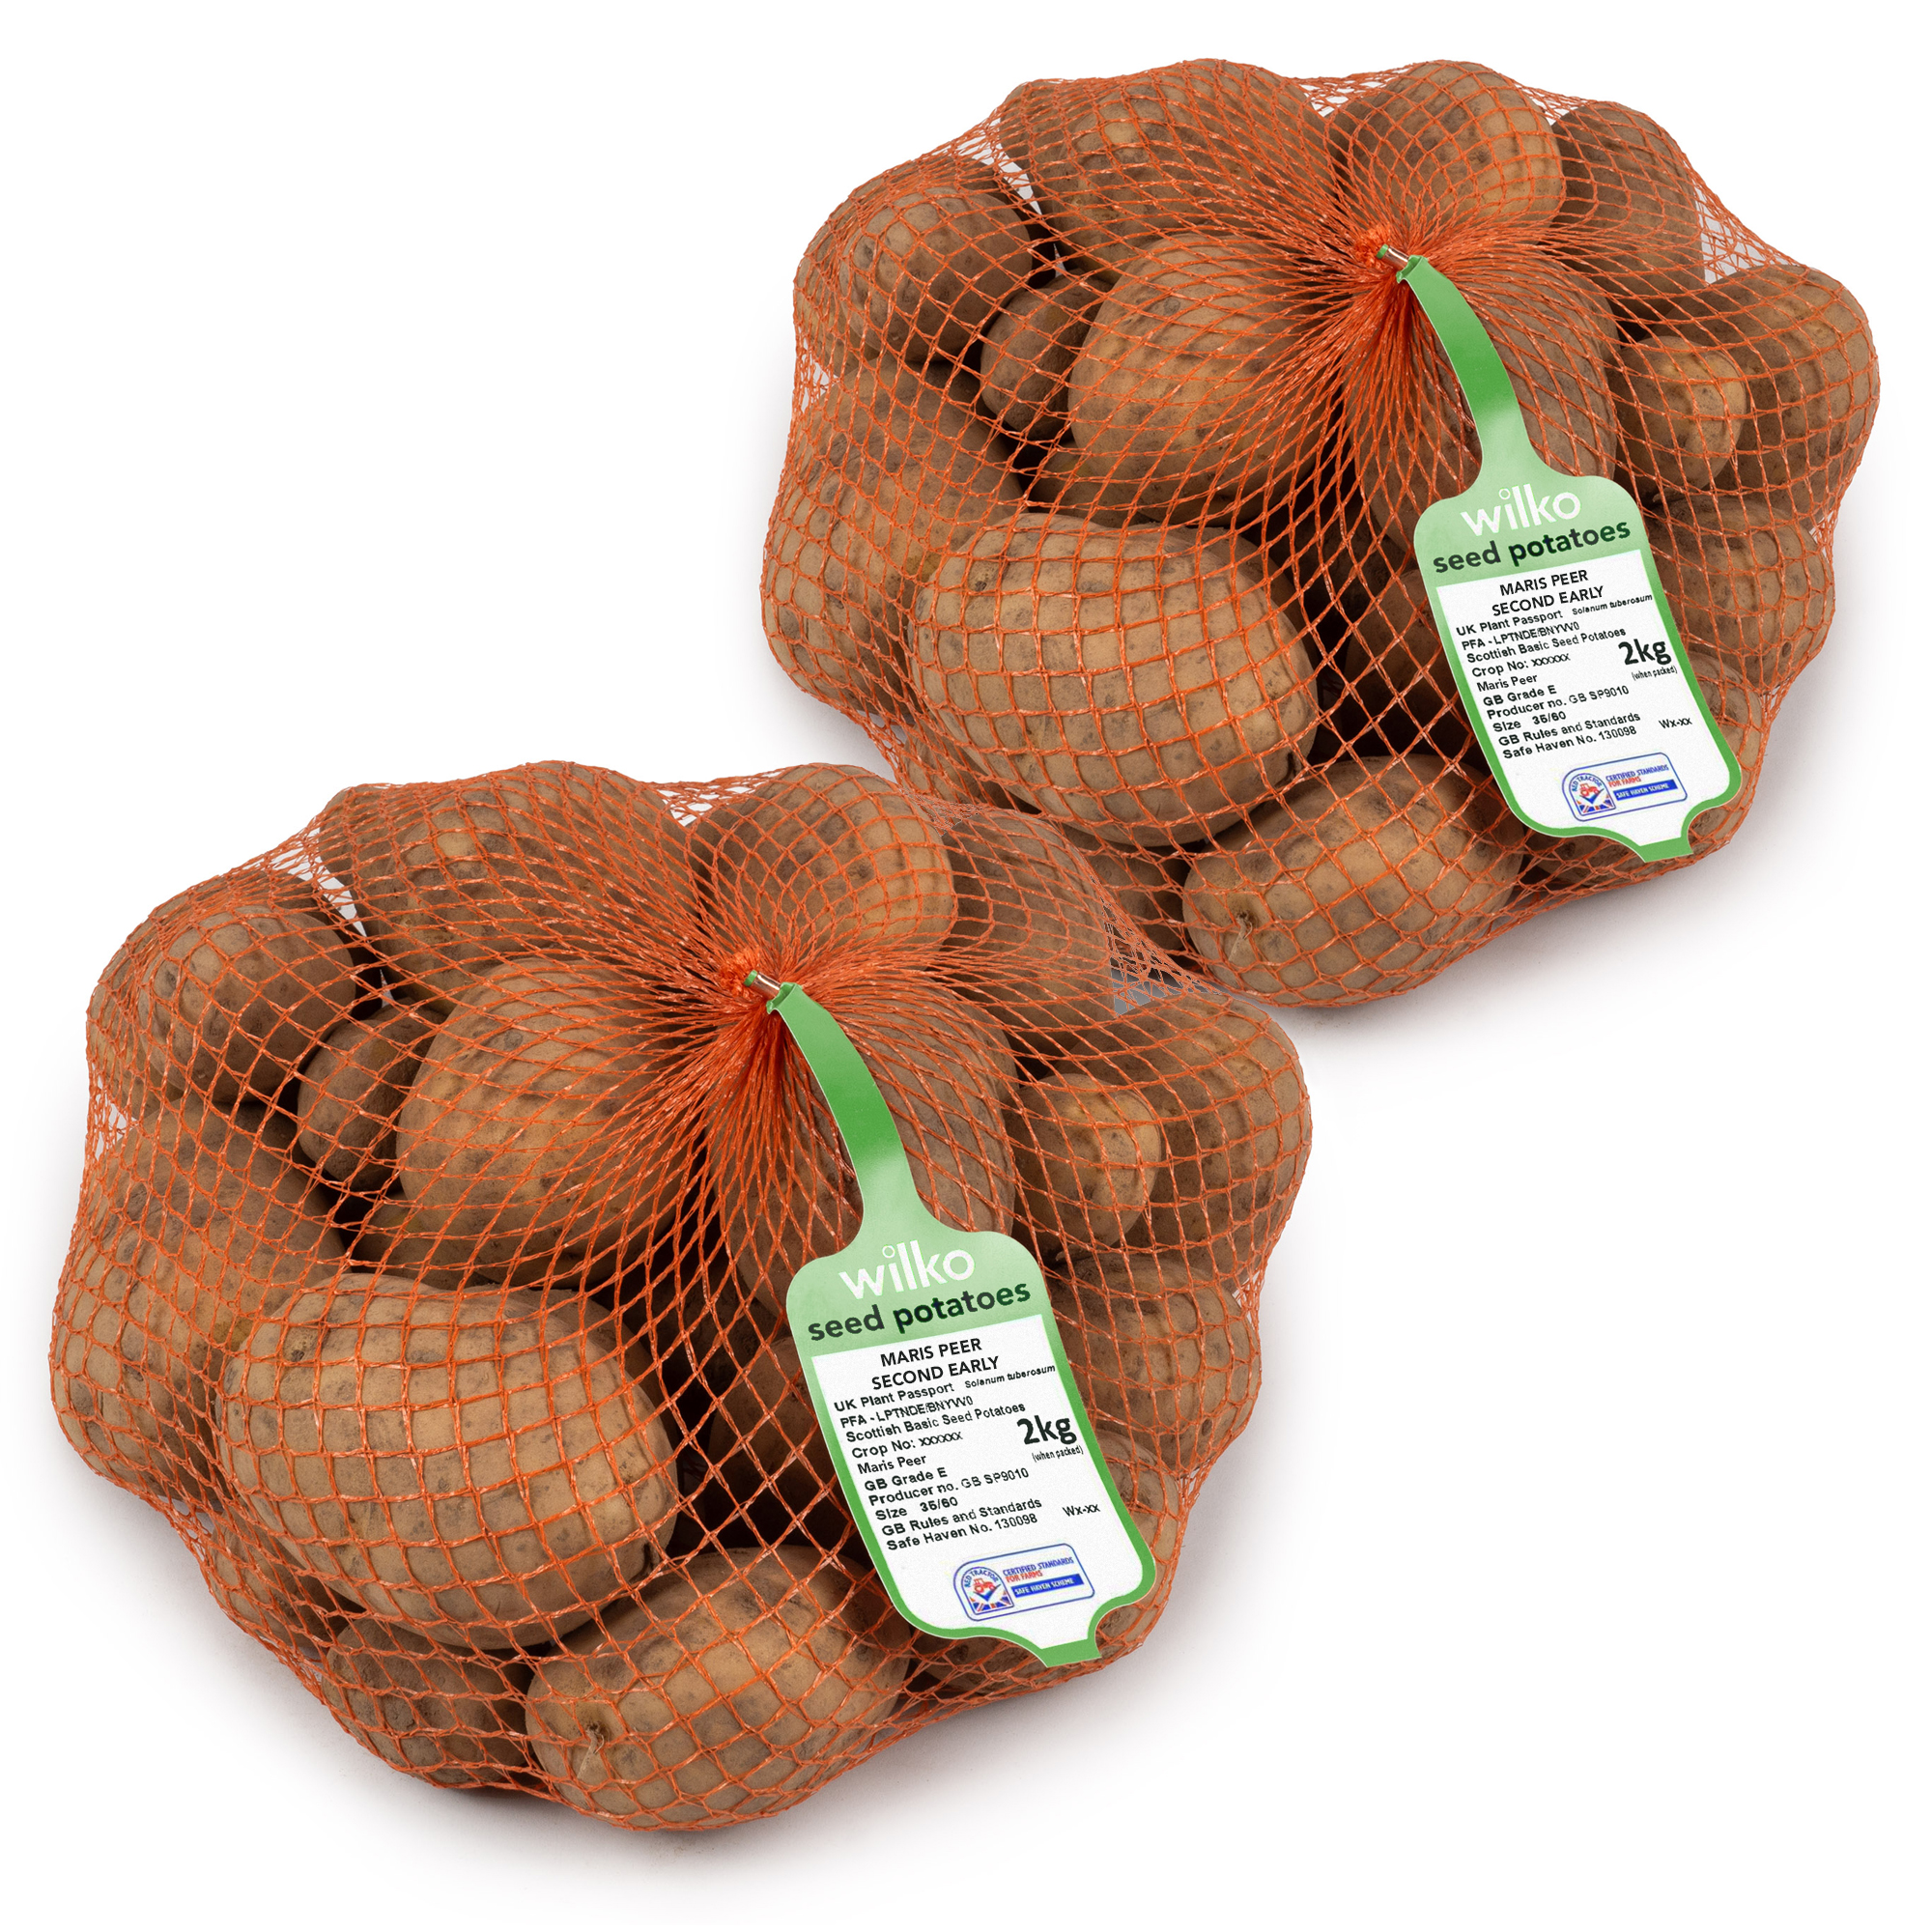 Wilko Maris Peer Early Seed Potatoes 4kg Image 2